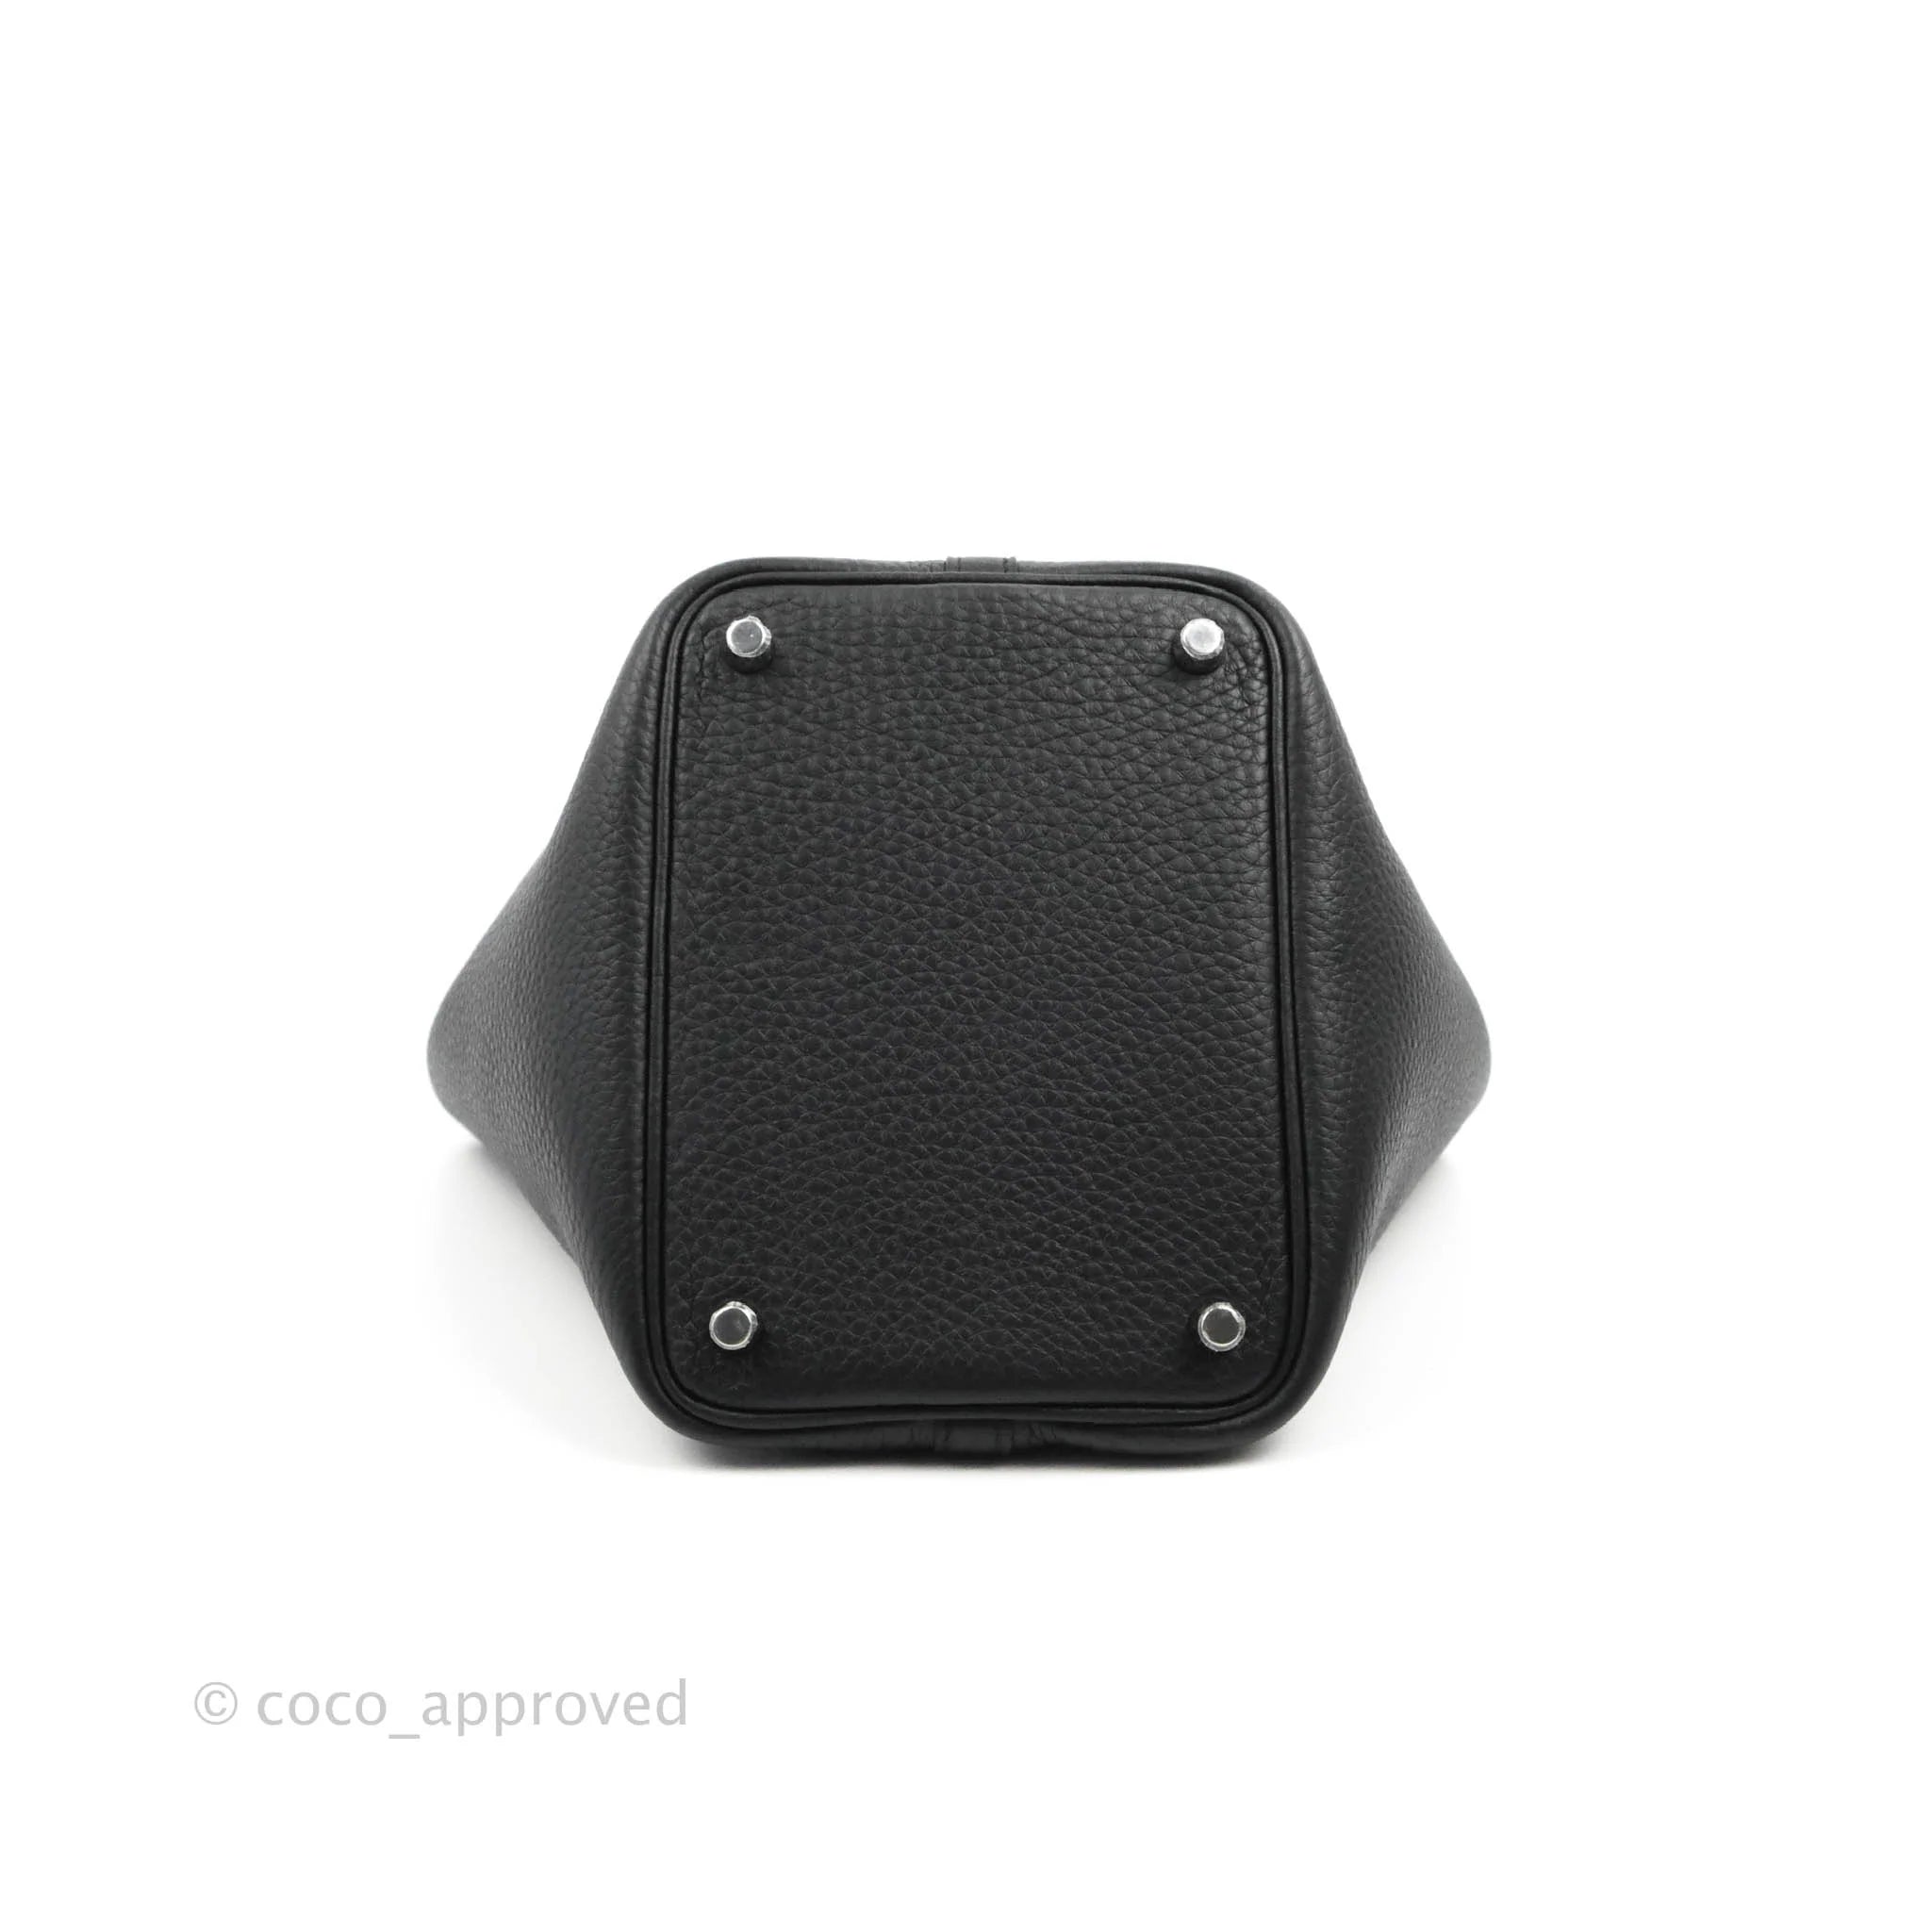 Hermès Picotin Lock 18 Bag In Etoupe Clemence With Palladium Hardware